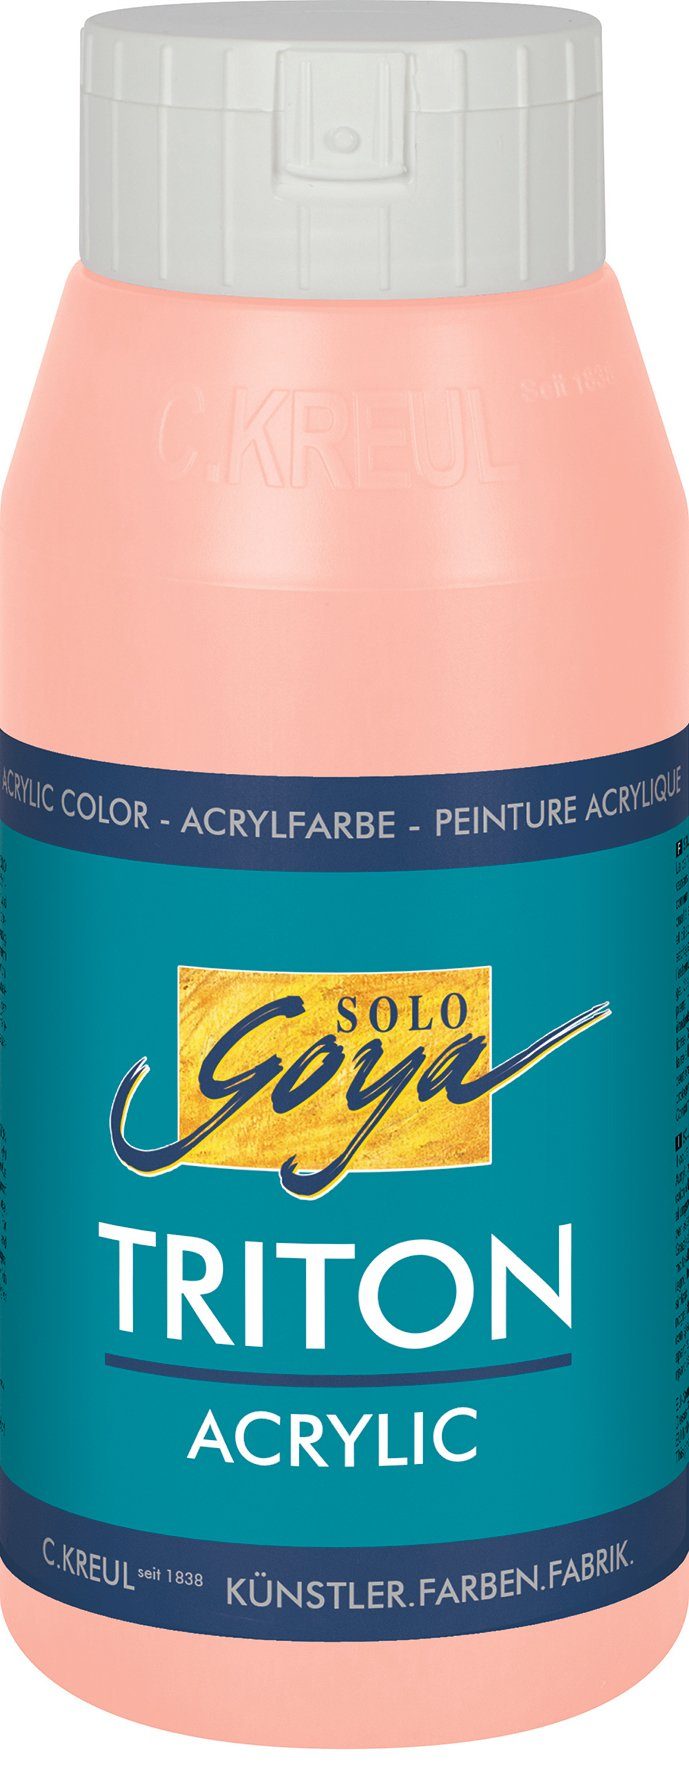 Kreul Acrylfarbe Solo Goya Triton Acrylic, 750 ml Pfirsich-Rosa